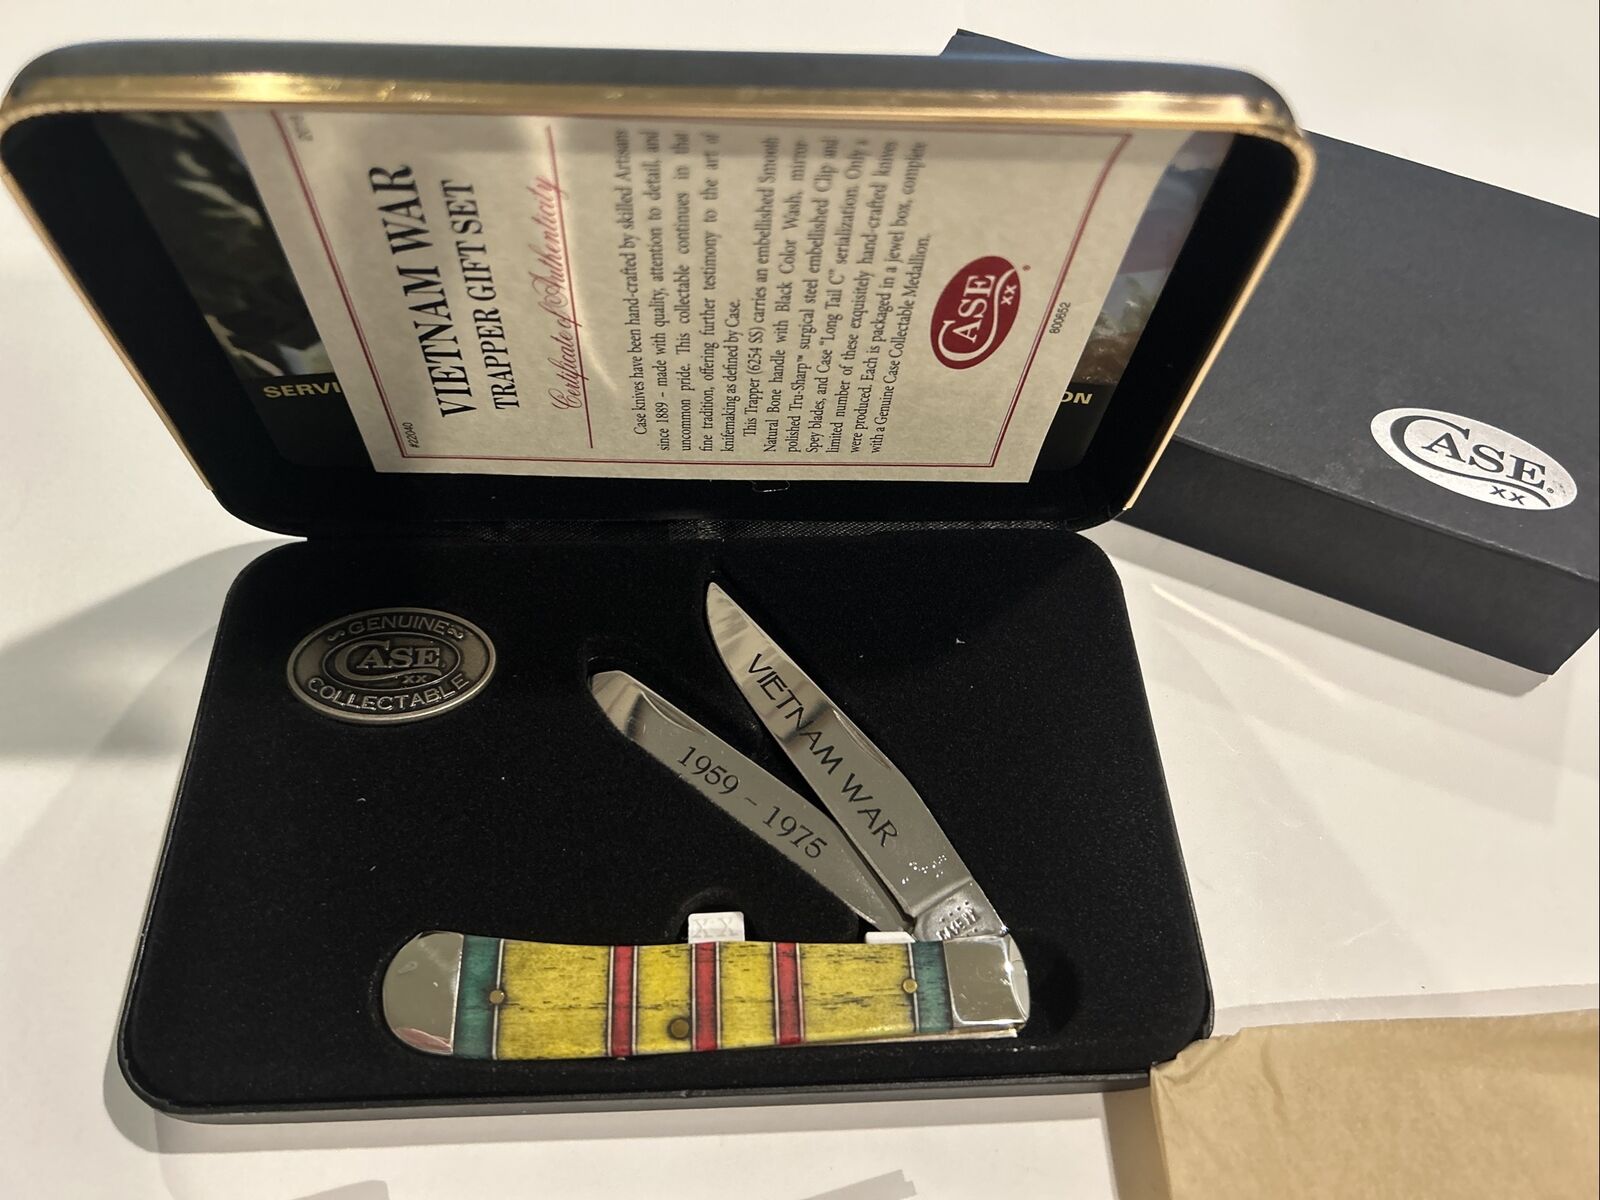 Case Cutlery XX Vietnam War Trapper 1959-1975 Folding Blade Knife Gift Set 